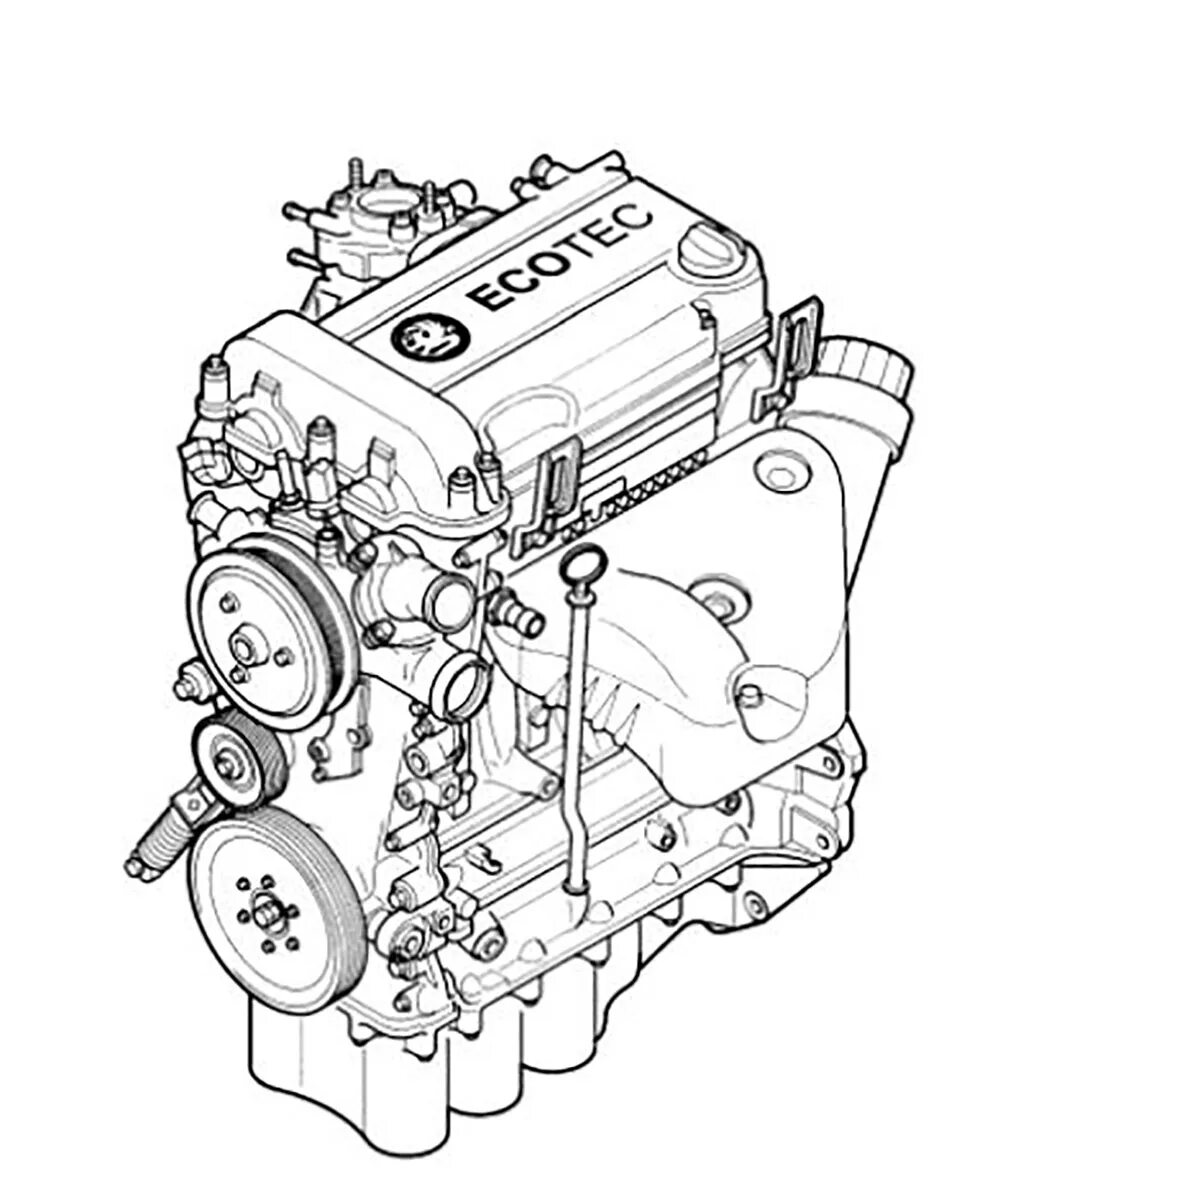 Z 12 3 1 8. Схема двигателя Опель Корса д 1.2. Схема двигателя Опель Корса 1.2. Двигатель Опеля 1,2 z12xe. Двигатель контрактный Opel x12xe 1.2.